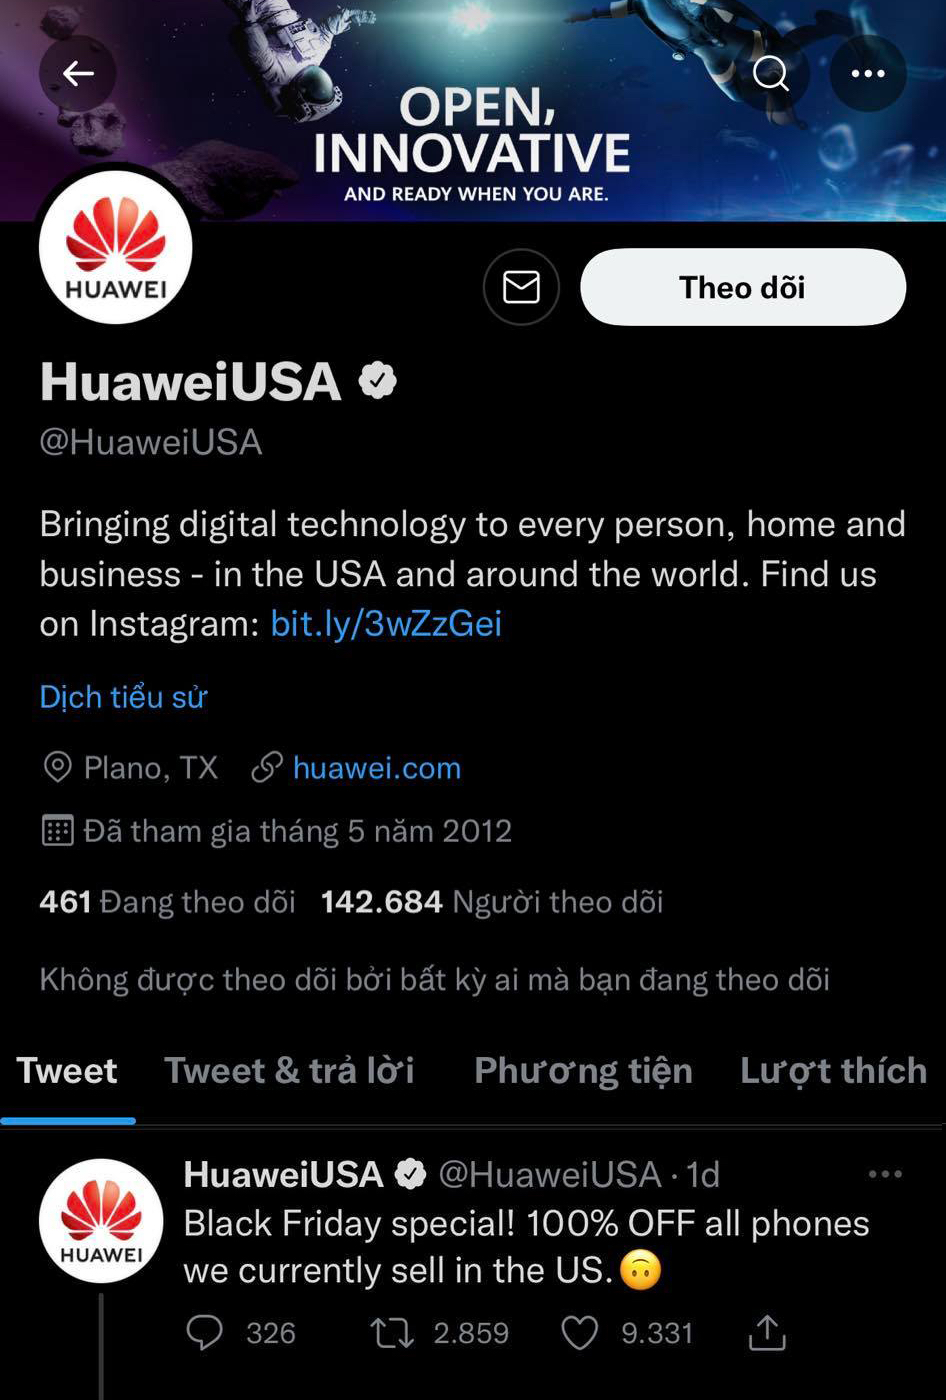 Huawei tuyên bố giảm giá 100% các mẫu điện thoại đang được bán tại Mỹ dịp Black Friday, nhưng cái kết lại khiến cộng đồng mạng ngã ngửa - Ảnh 1.